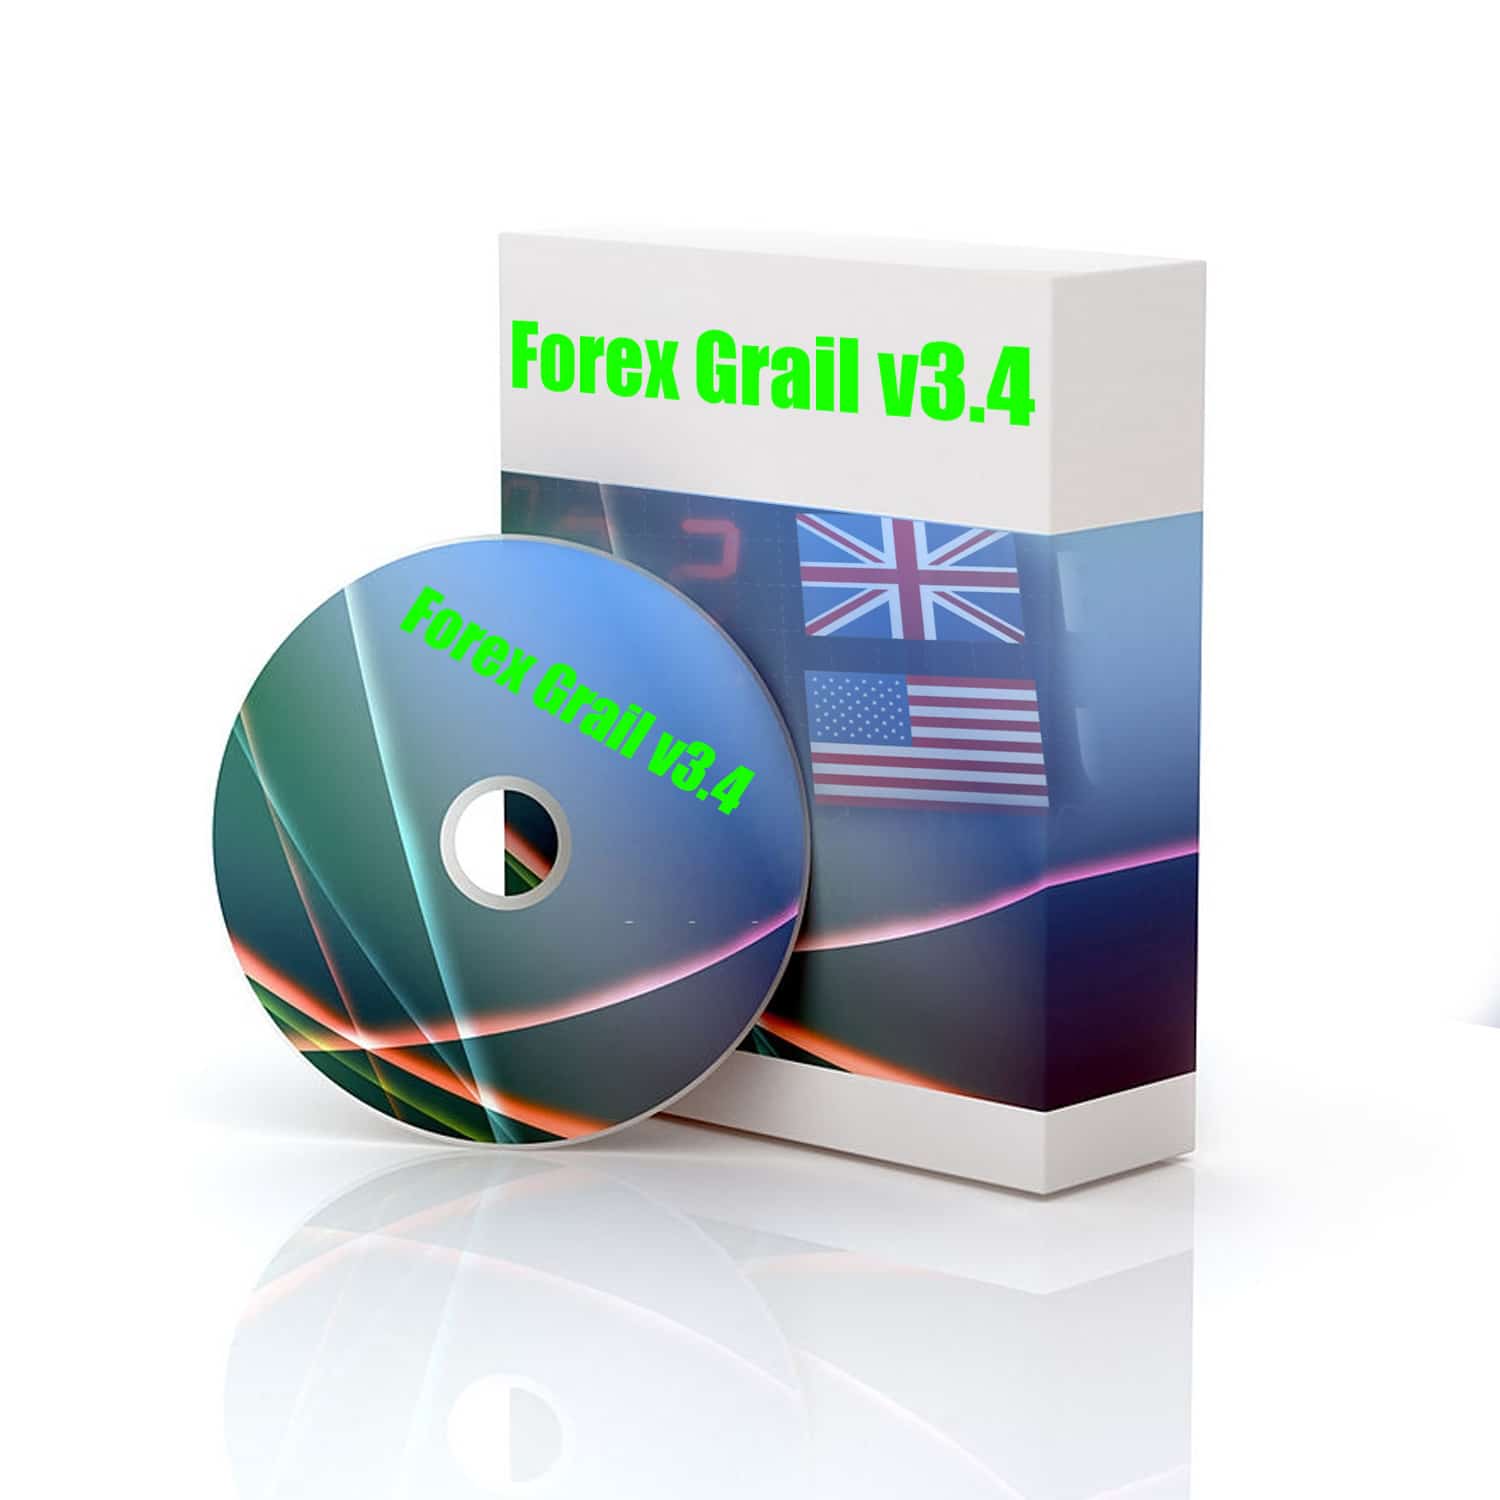 Forex Grail v3.4